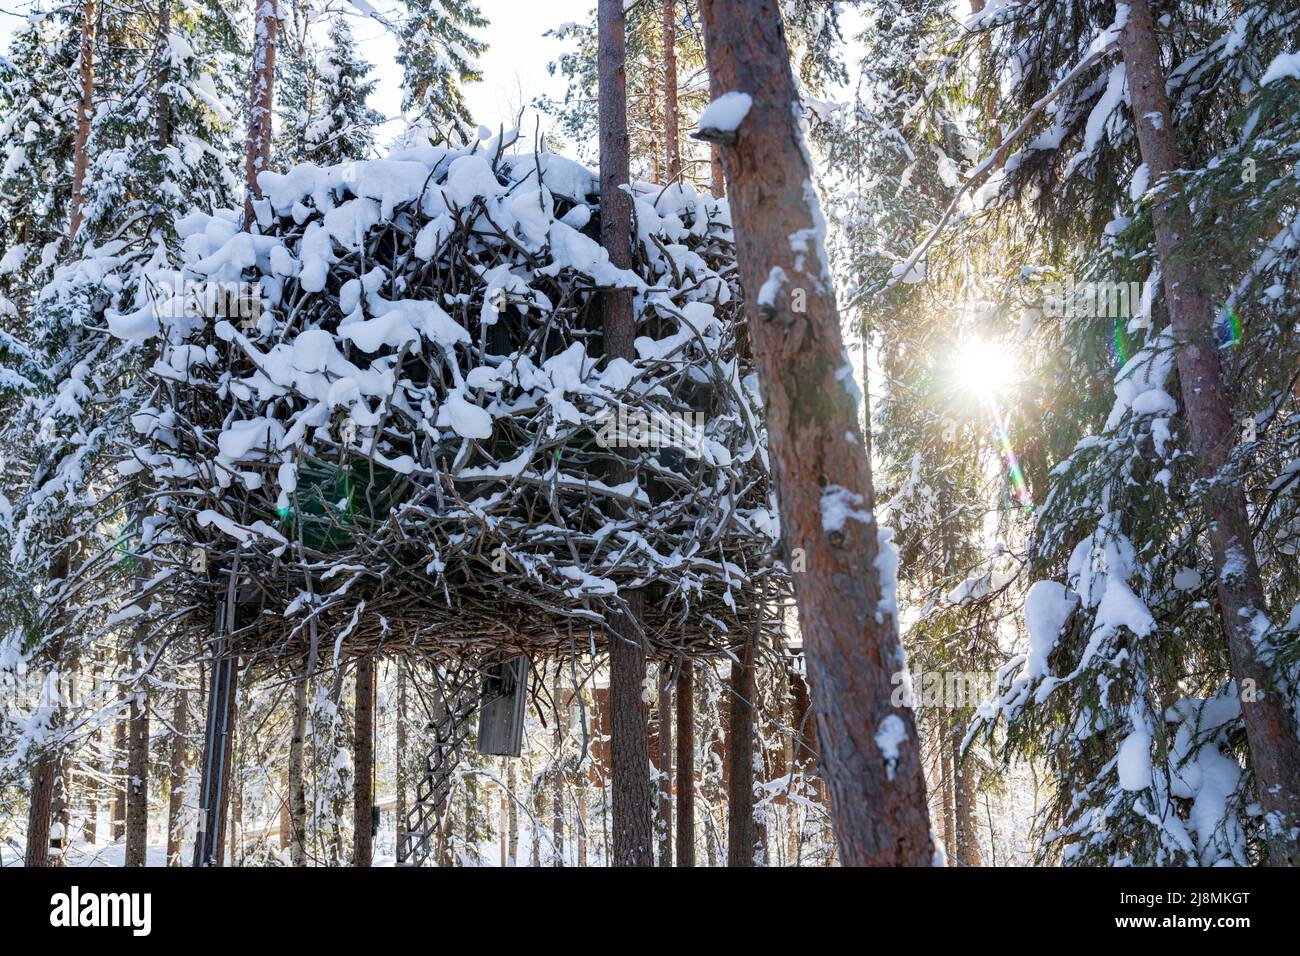 Ambiente acogedor dormitorio para los turistas del Tree Hotel en la copa del árbol en forma de nido de aves, Harads, Laponia, Suecia Foto de stock